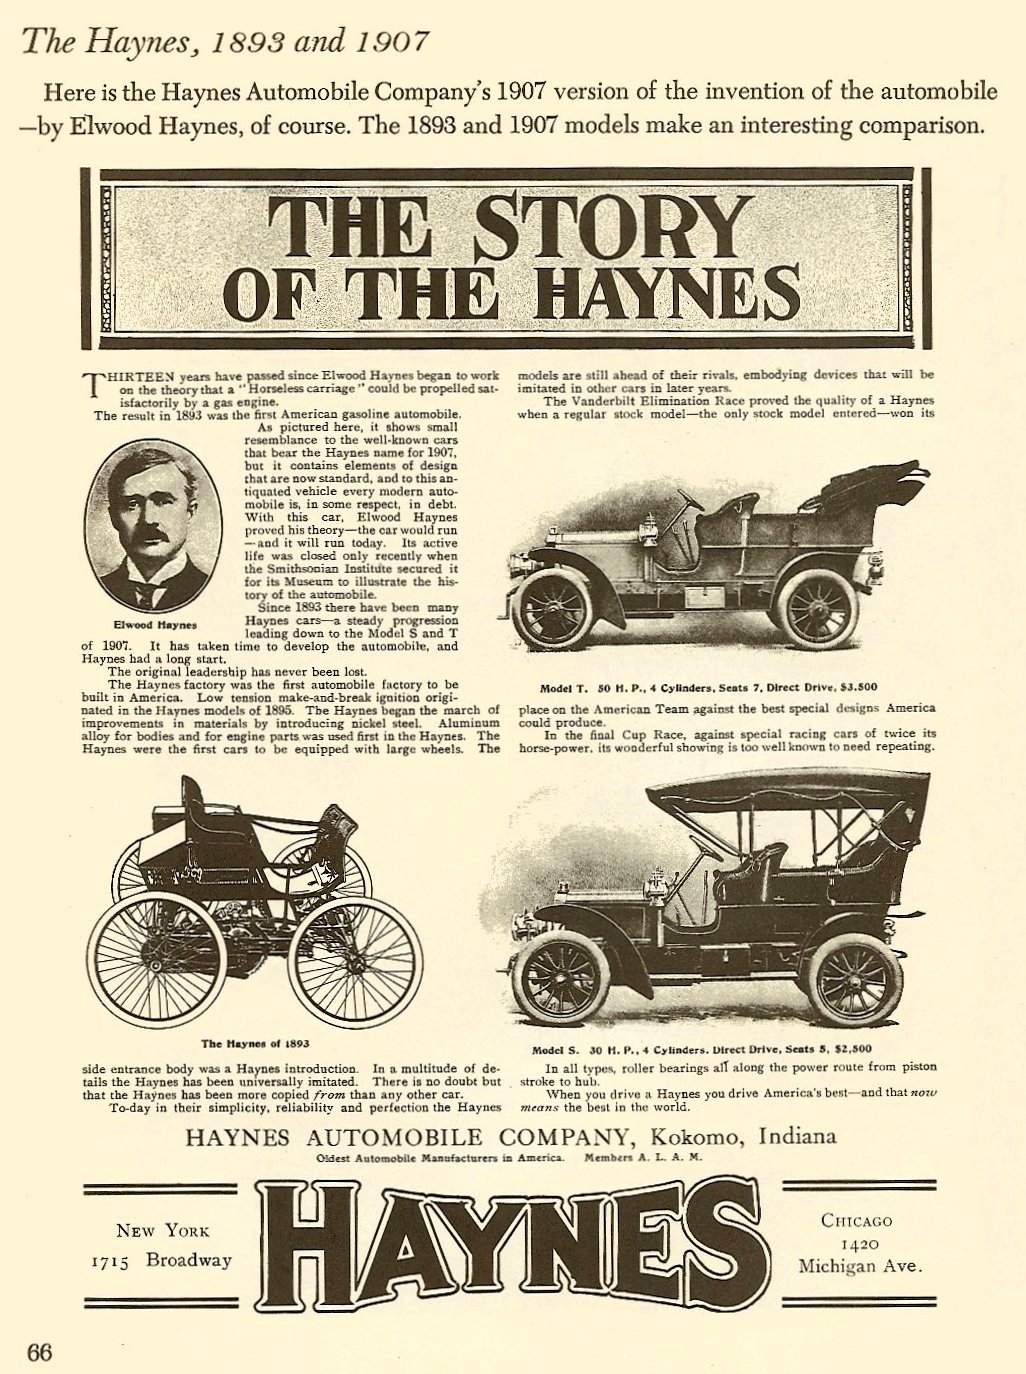 1907 Haynes-Apperson Auto Advertising